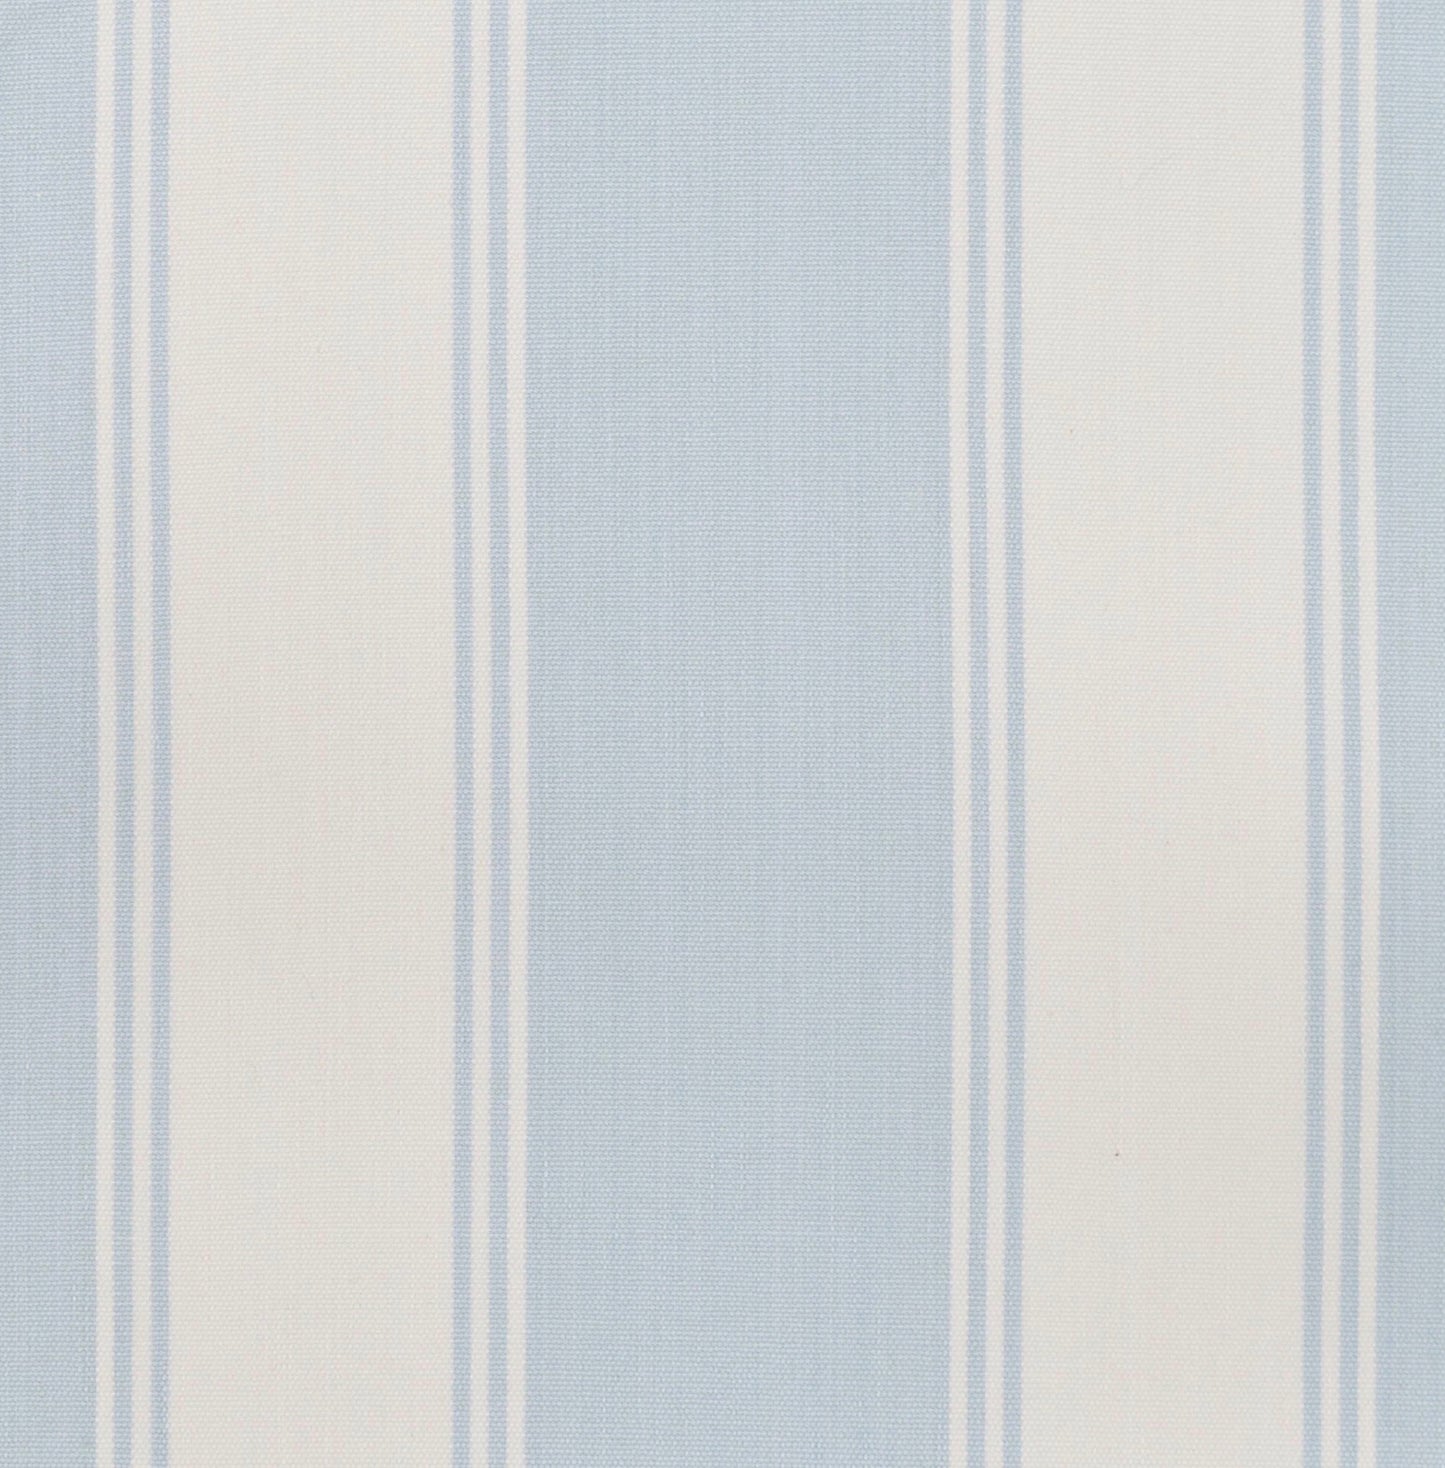 DAYBED PALM SPRINGS blanc, tissu à rayures bleu pâle et crème